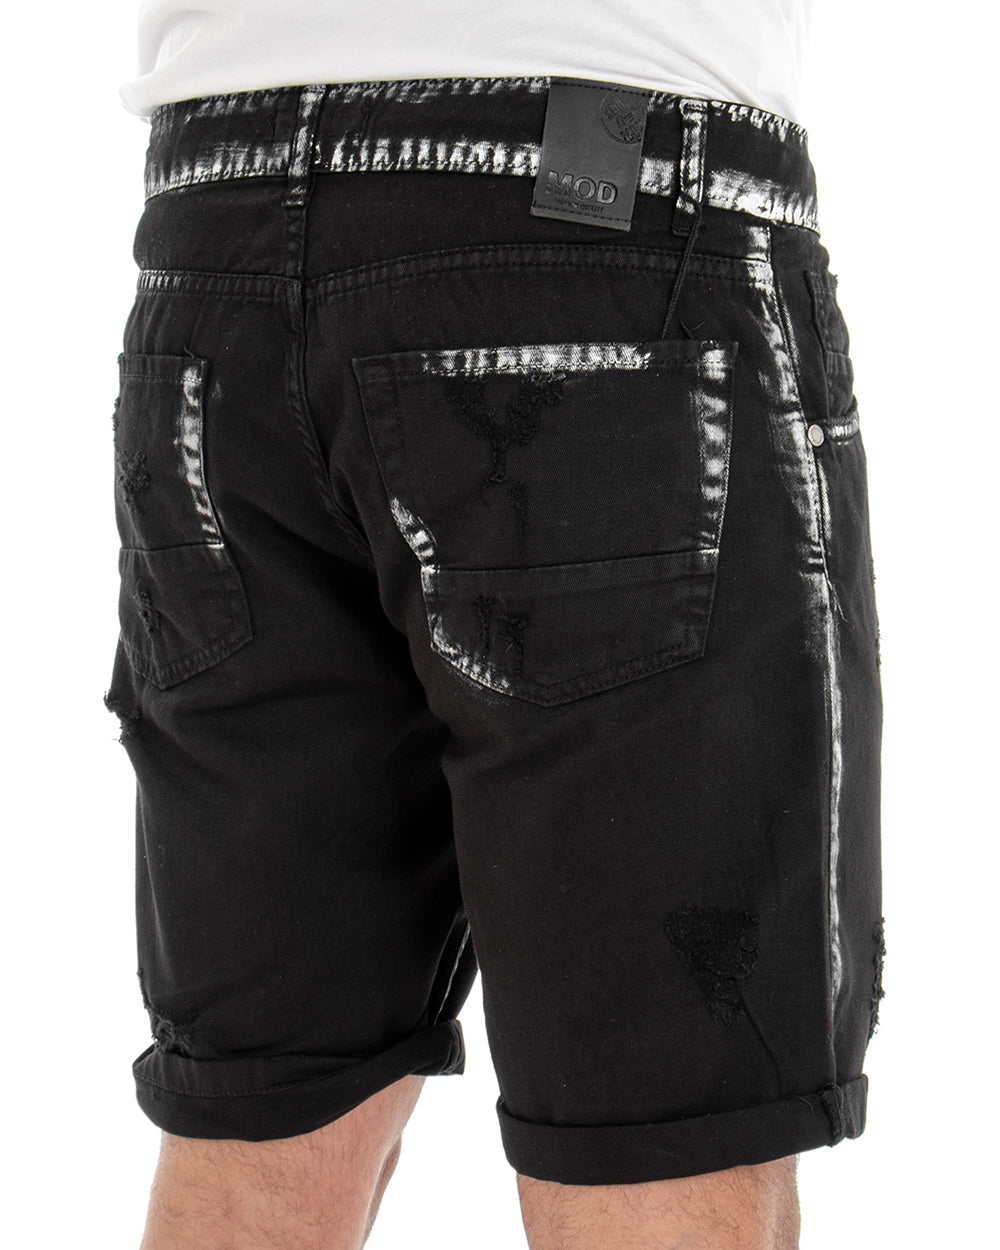 Bermuda Pantaloncino Uomo Corto Jeans Nero Rotture Macchie Di Pittura GIOSAL-PC1831A